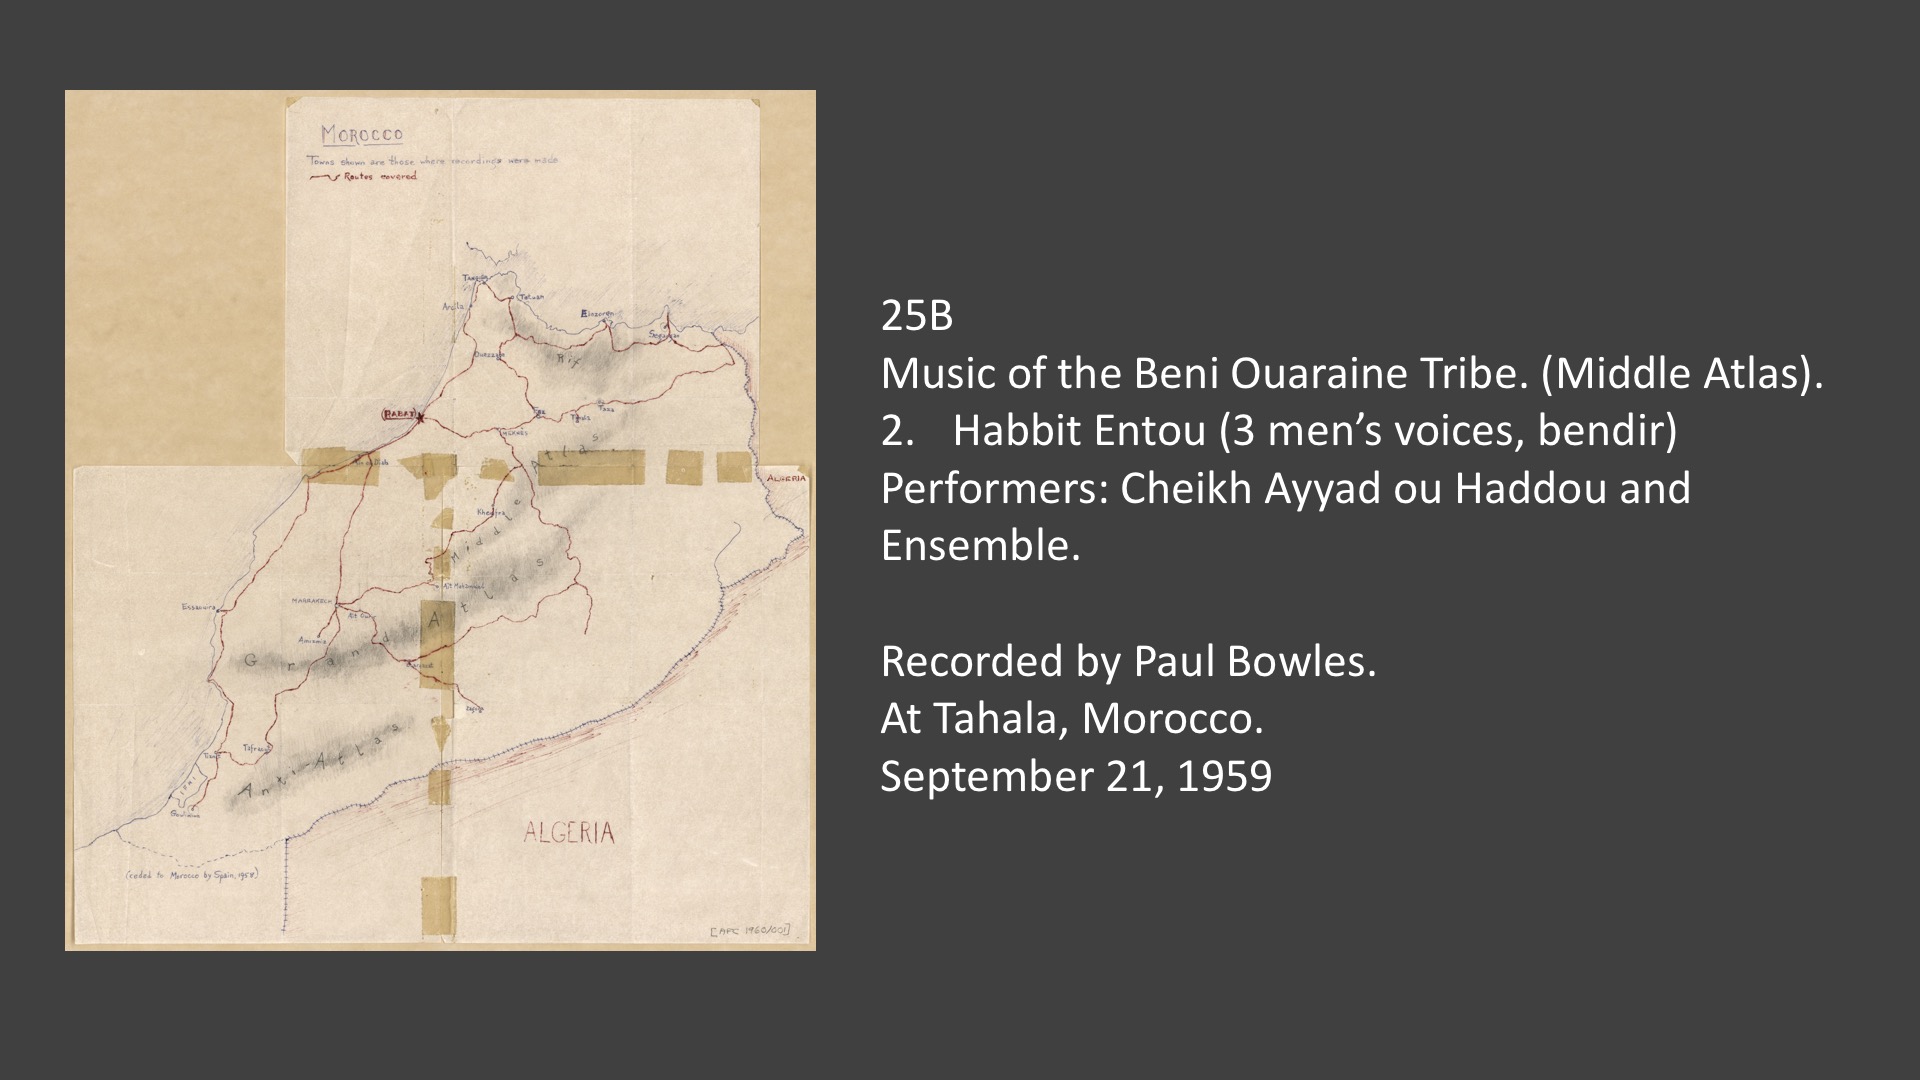 25B Music of the Beni Ouaraine Tribe. (Middle Atlas).
2. Habbit Entou (3 men's voices, bendir). Performers: Cheikh Ayyad ou Haddou and Ensemble.